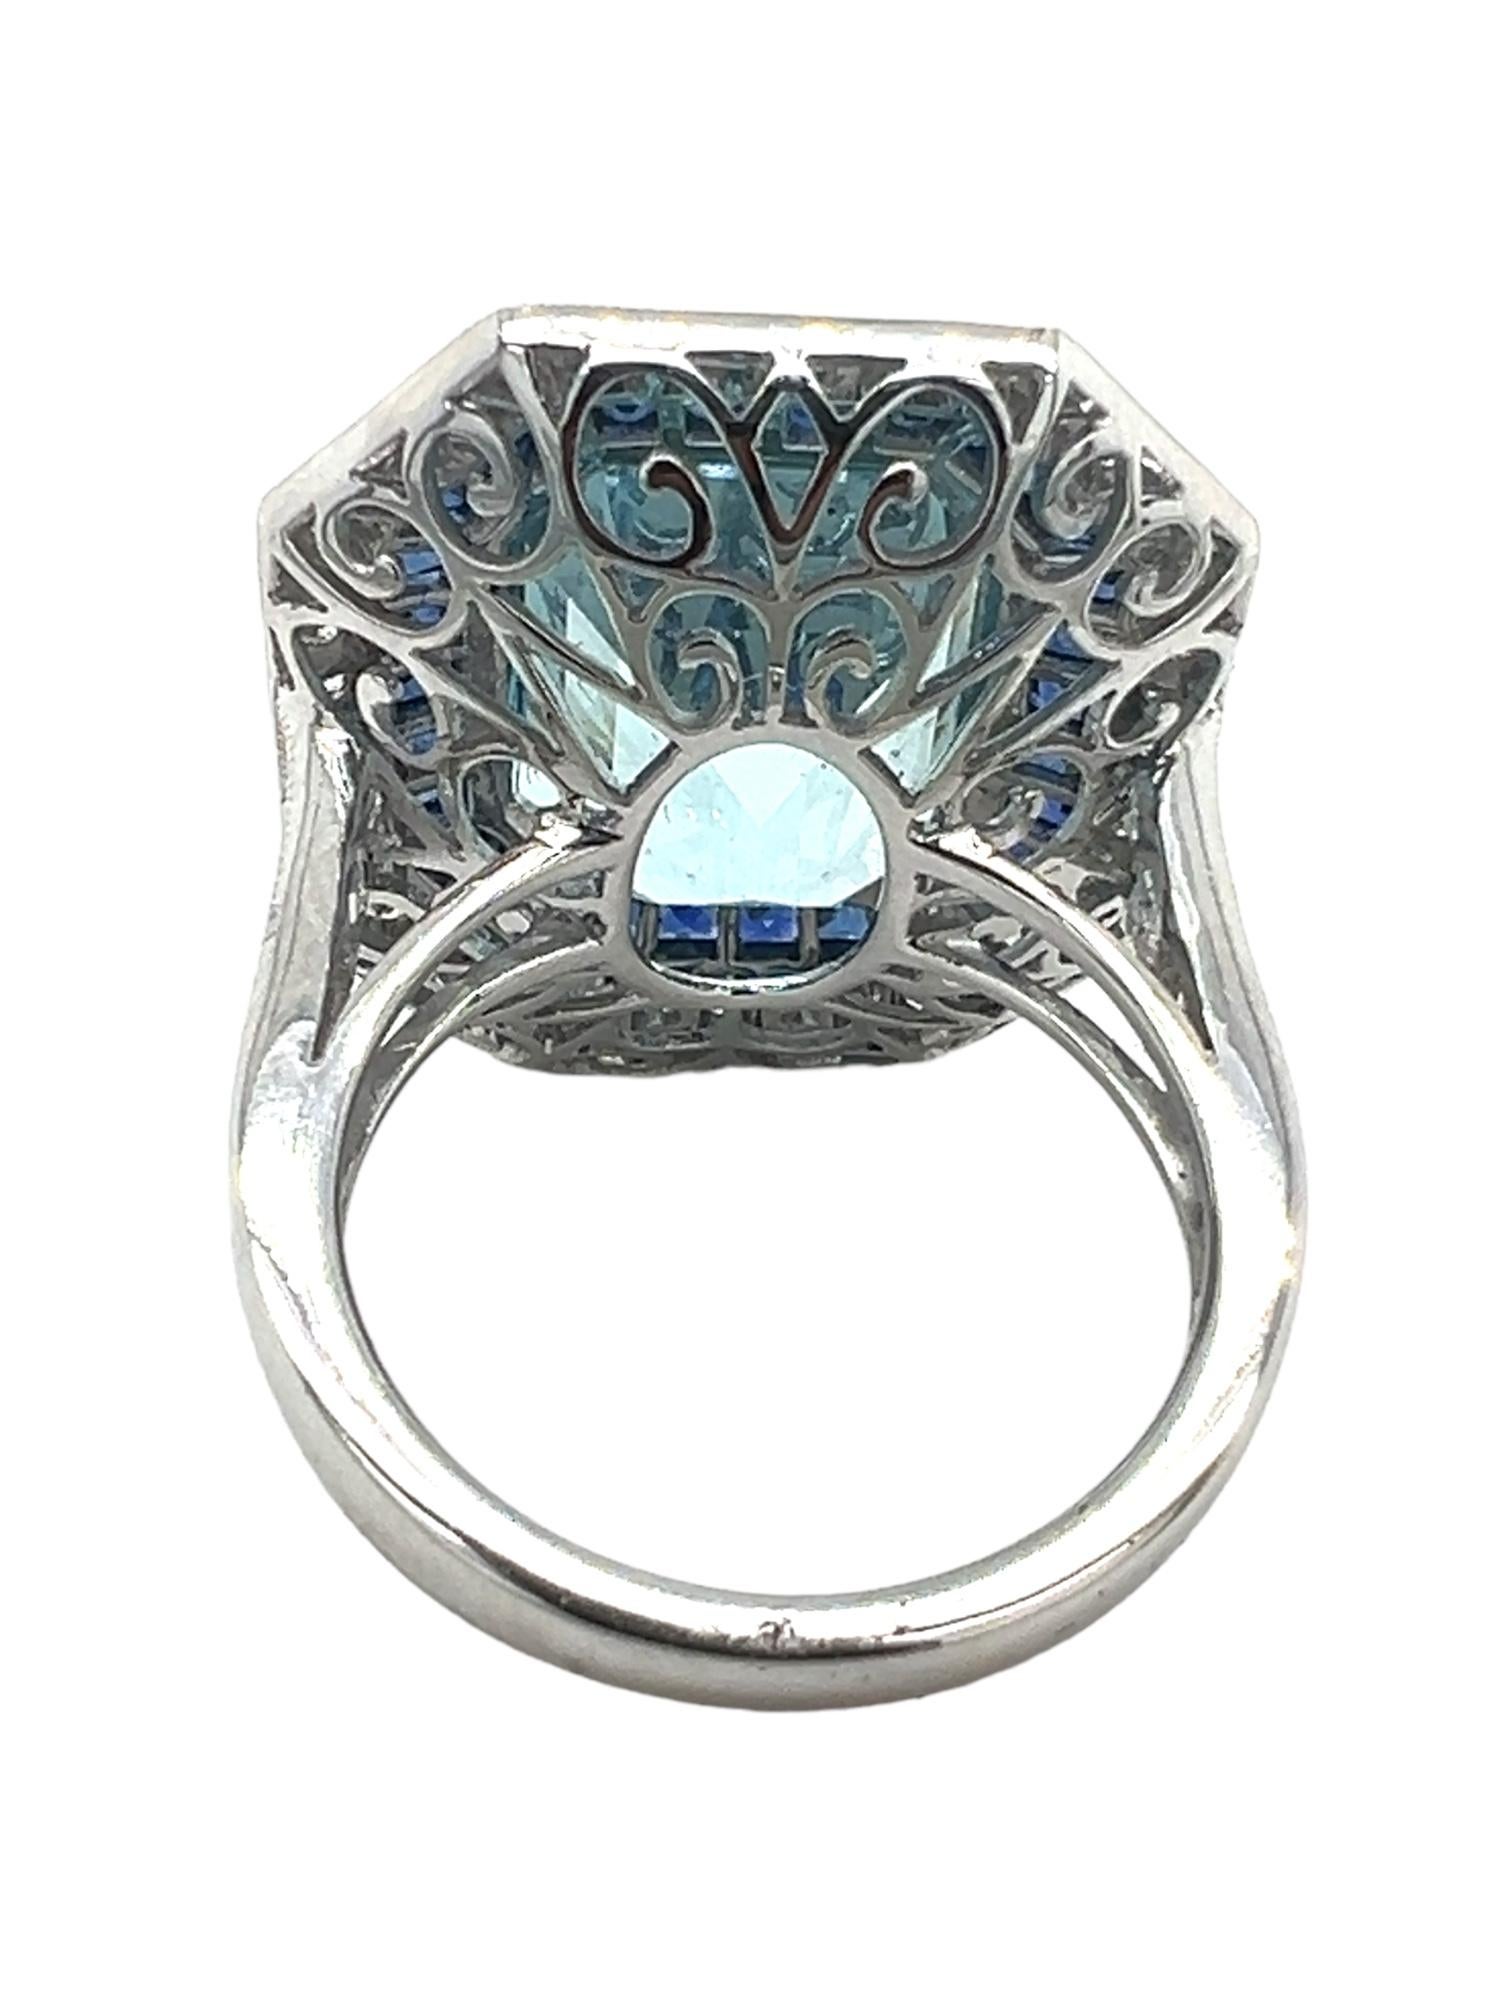 Emerald Cut Sophia D. 9.20 Carat Aquamarine Ring For Sale